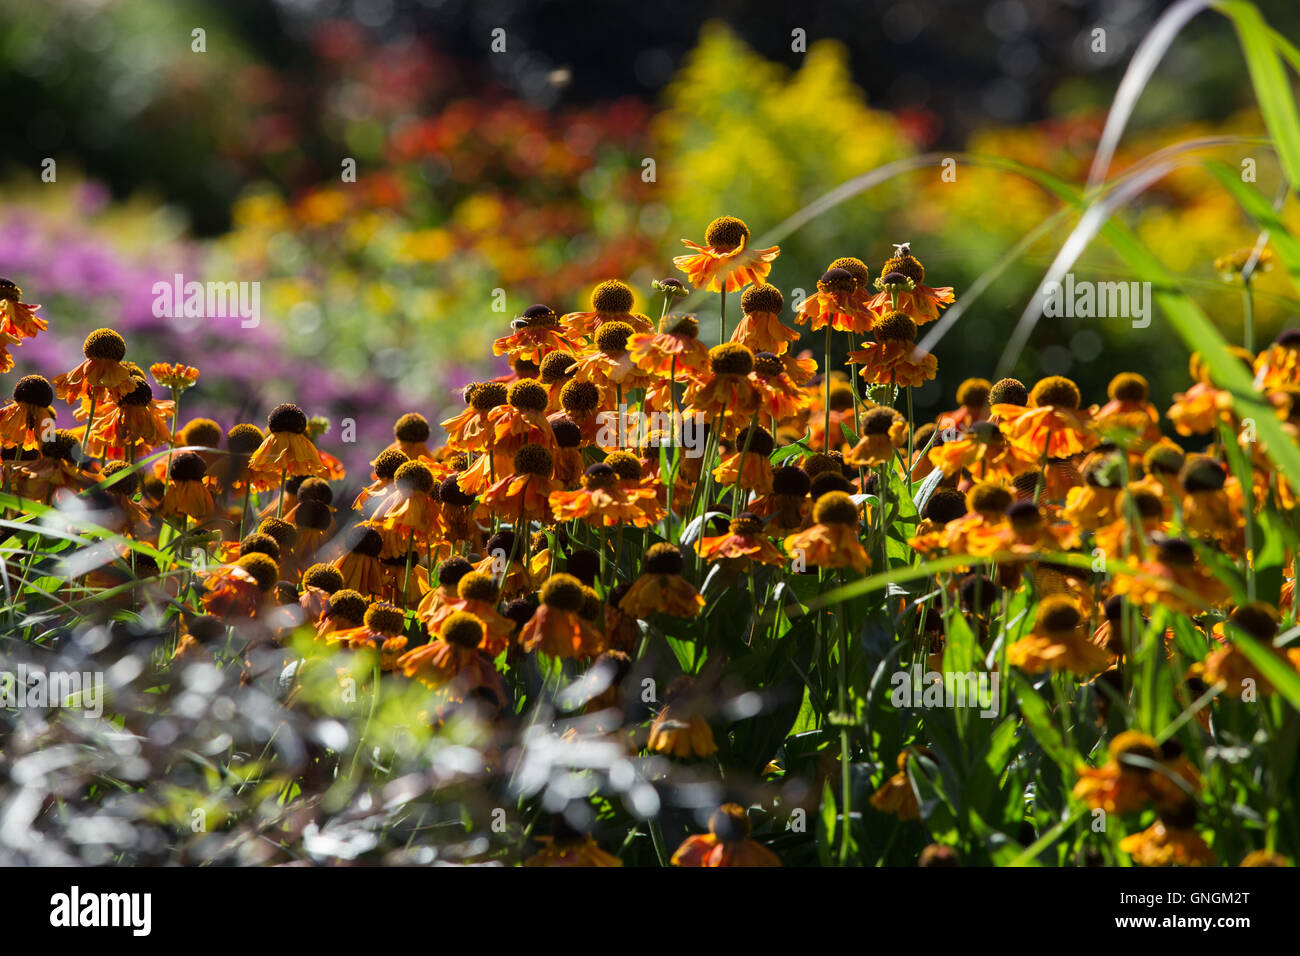 Fröhliche Helenium Blumen bringen leuchtende Farben zu einem Garten Inj Spätsommer und Herbst Stockfoto